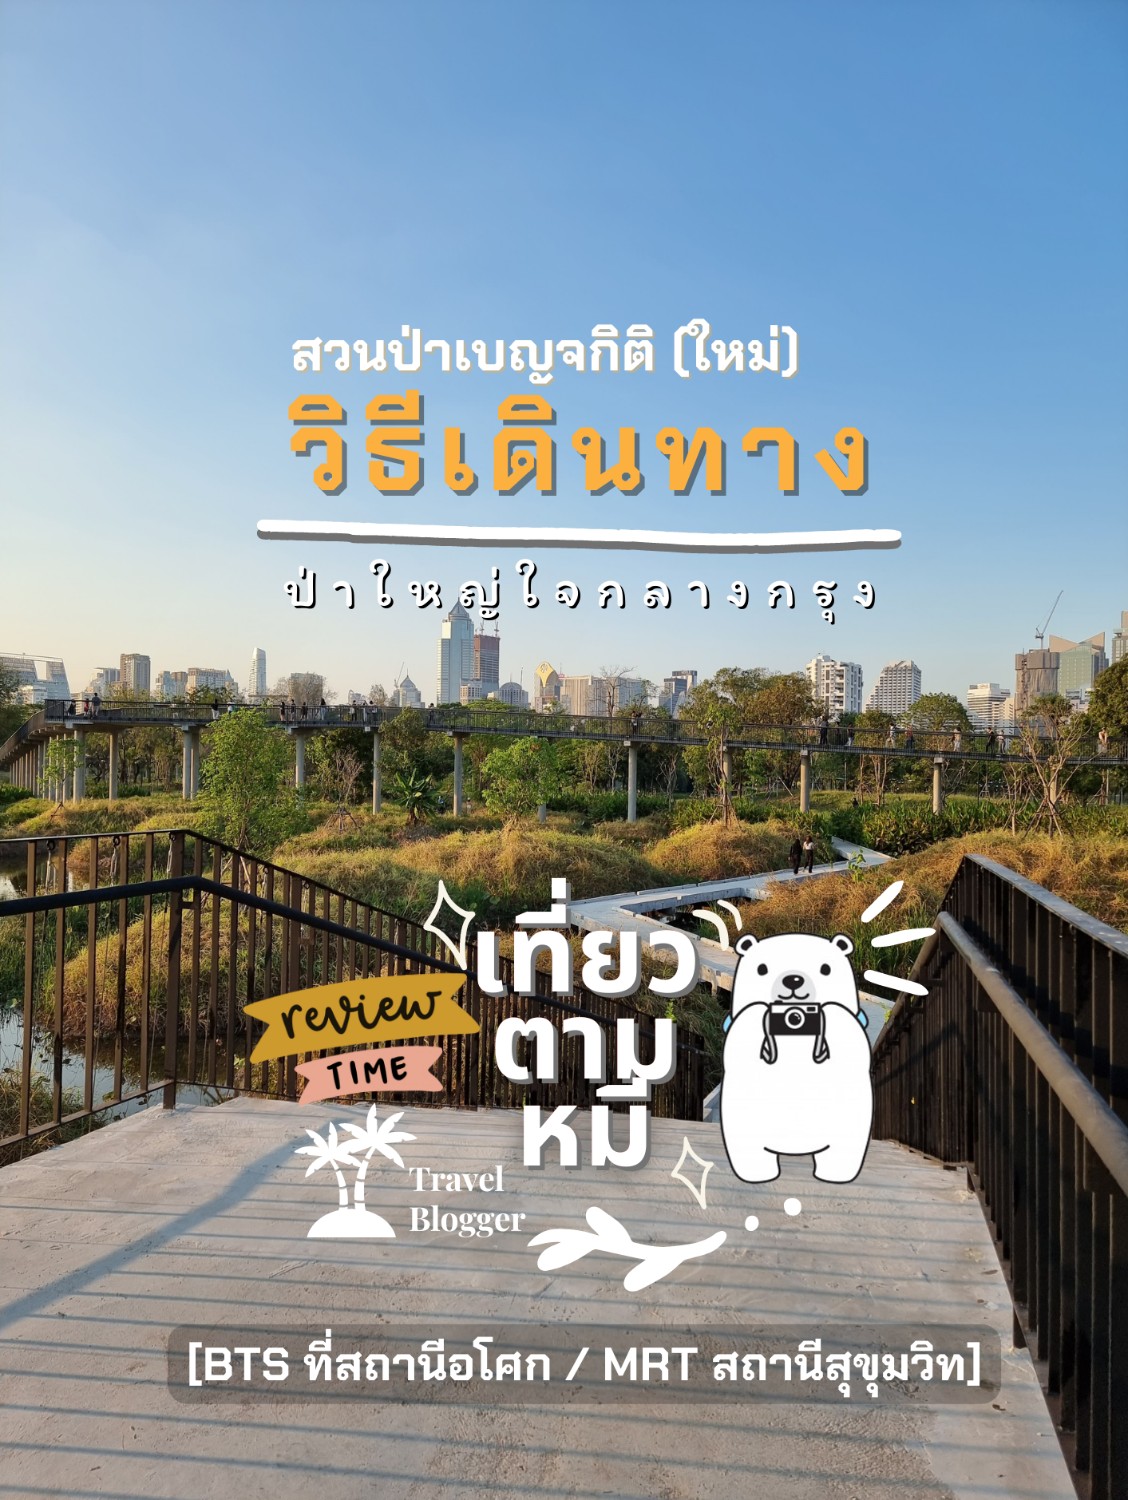 รีวิวการเดินทาง : มาสวนป่าเบญจกิติ (Benchakitti Park)สวนสาธารณะแห่งใหม่ของ กรุงเทพ - Pantip